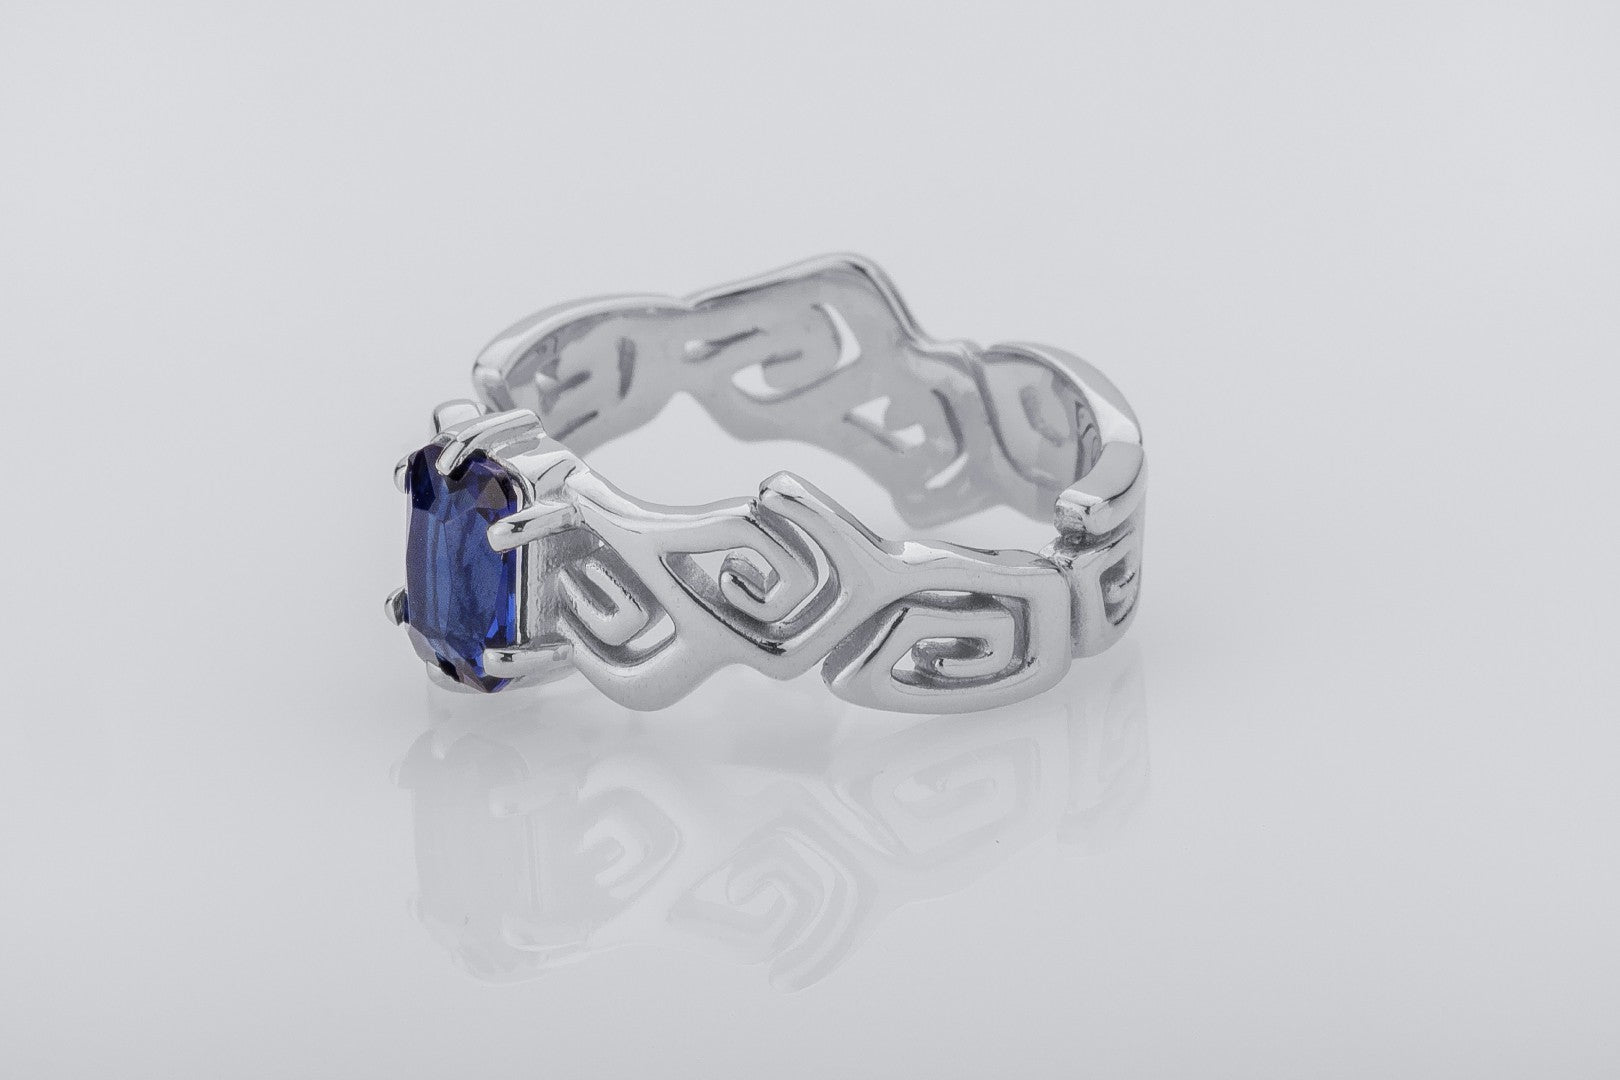 Sea Foam Ring with Blue Gem, 925 Silver